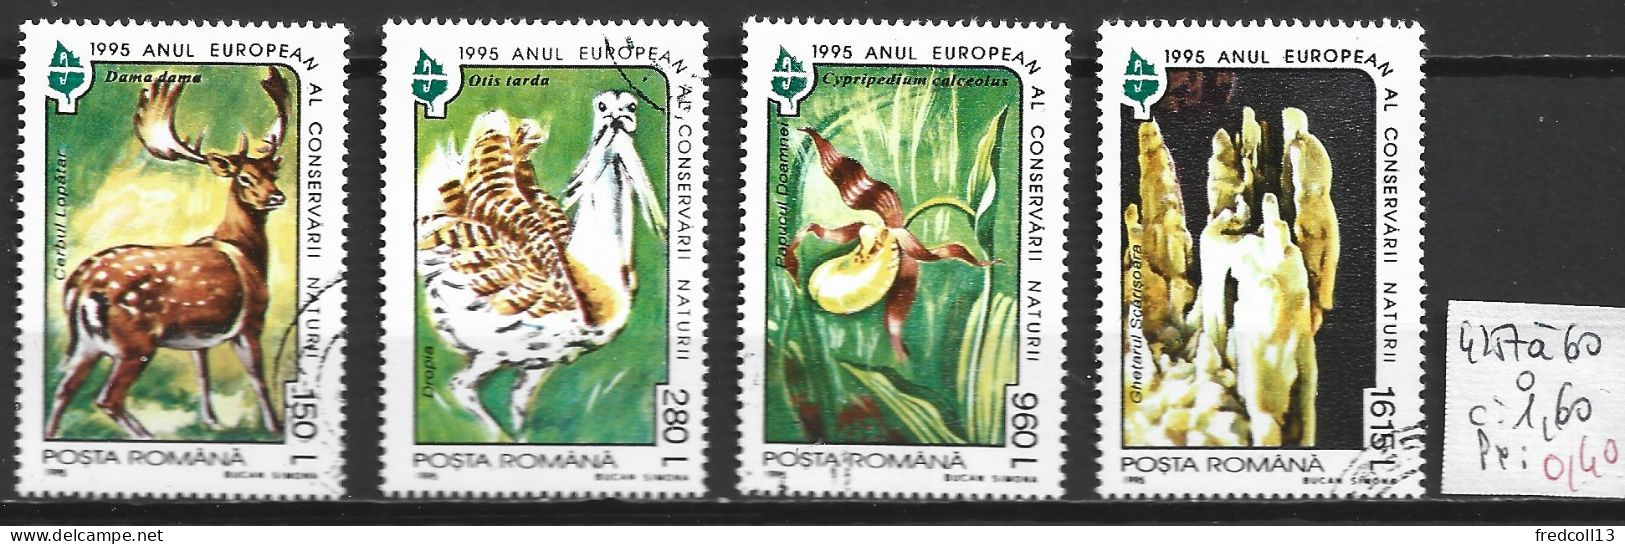 ROUMANIE 4257 à 60 Oblitérés Côte 1.60 € - Used Stamps